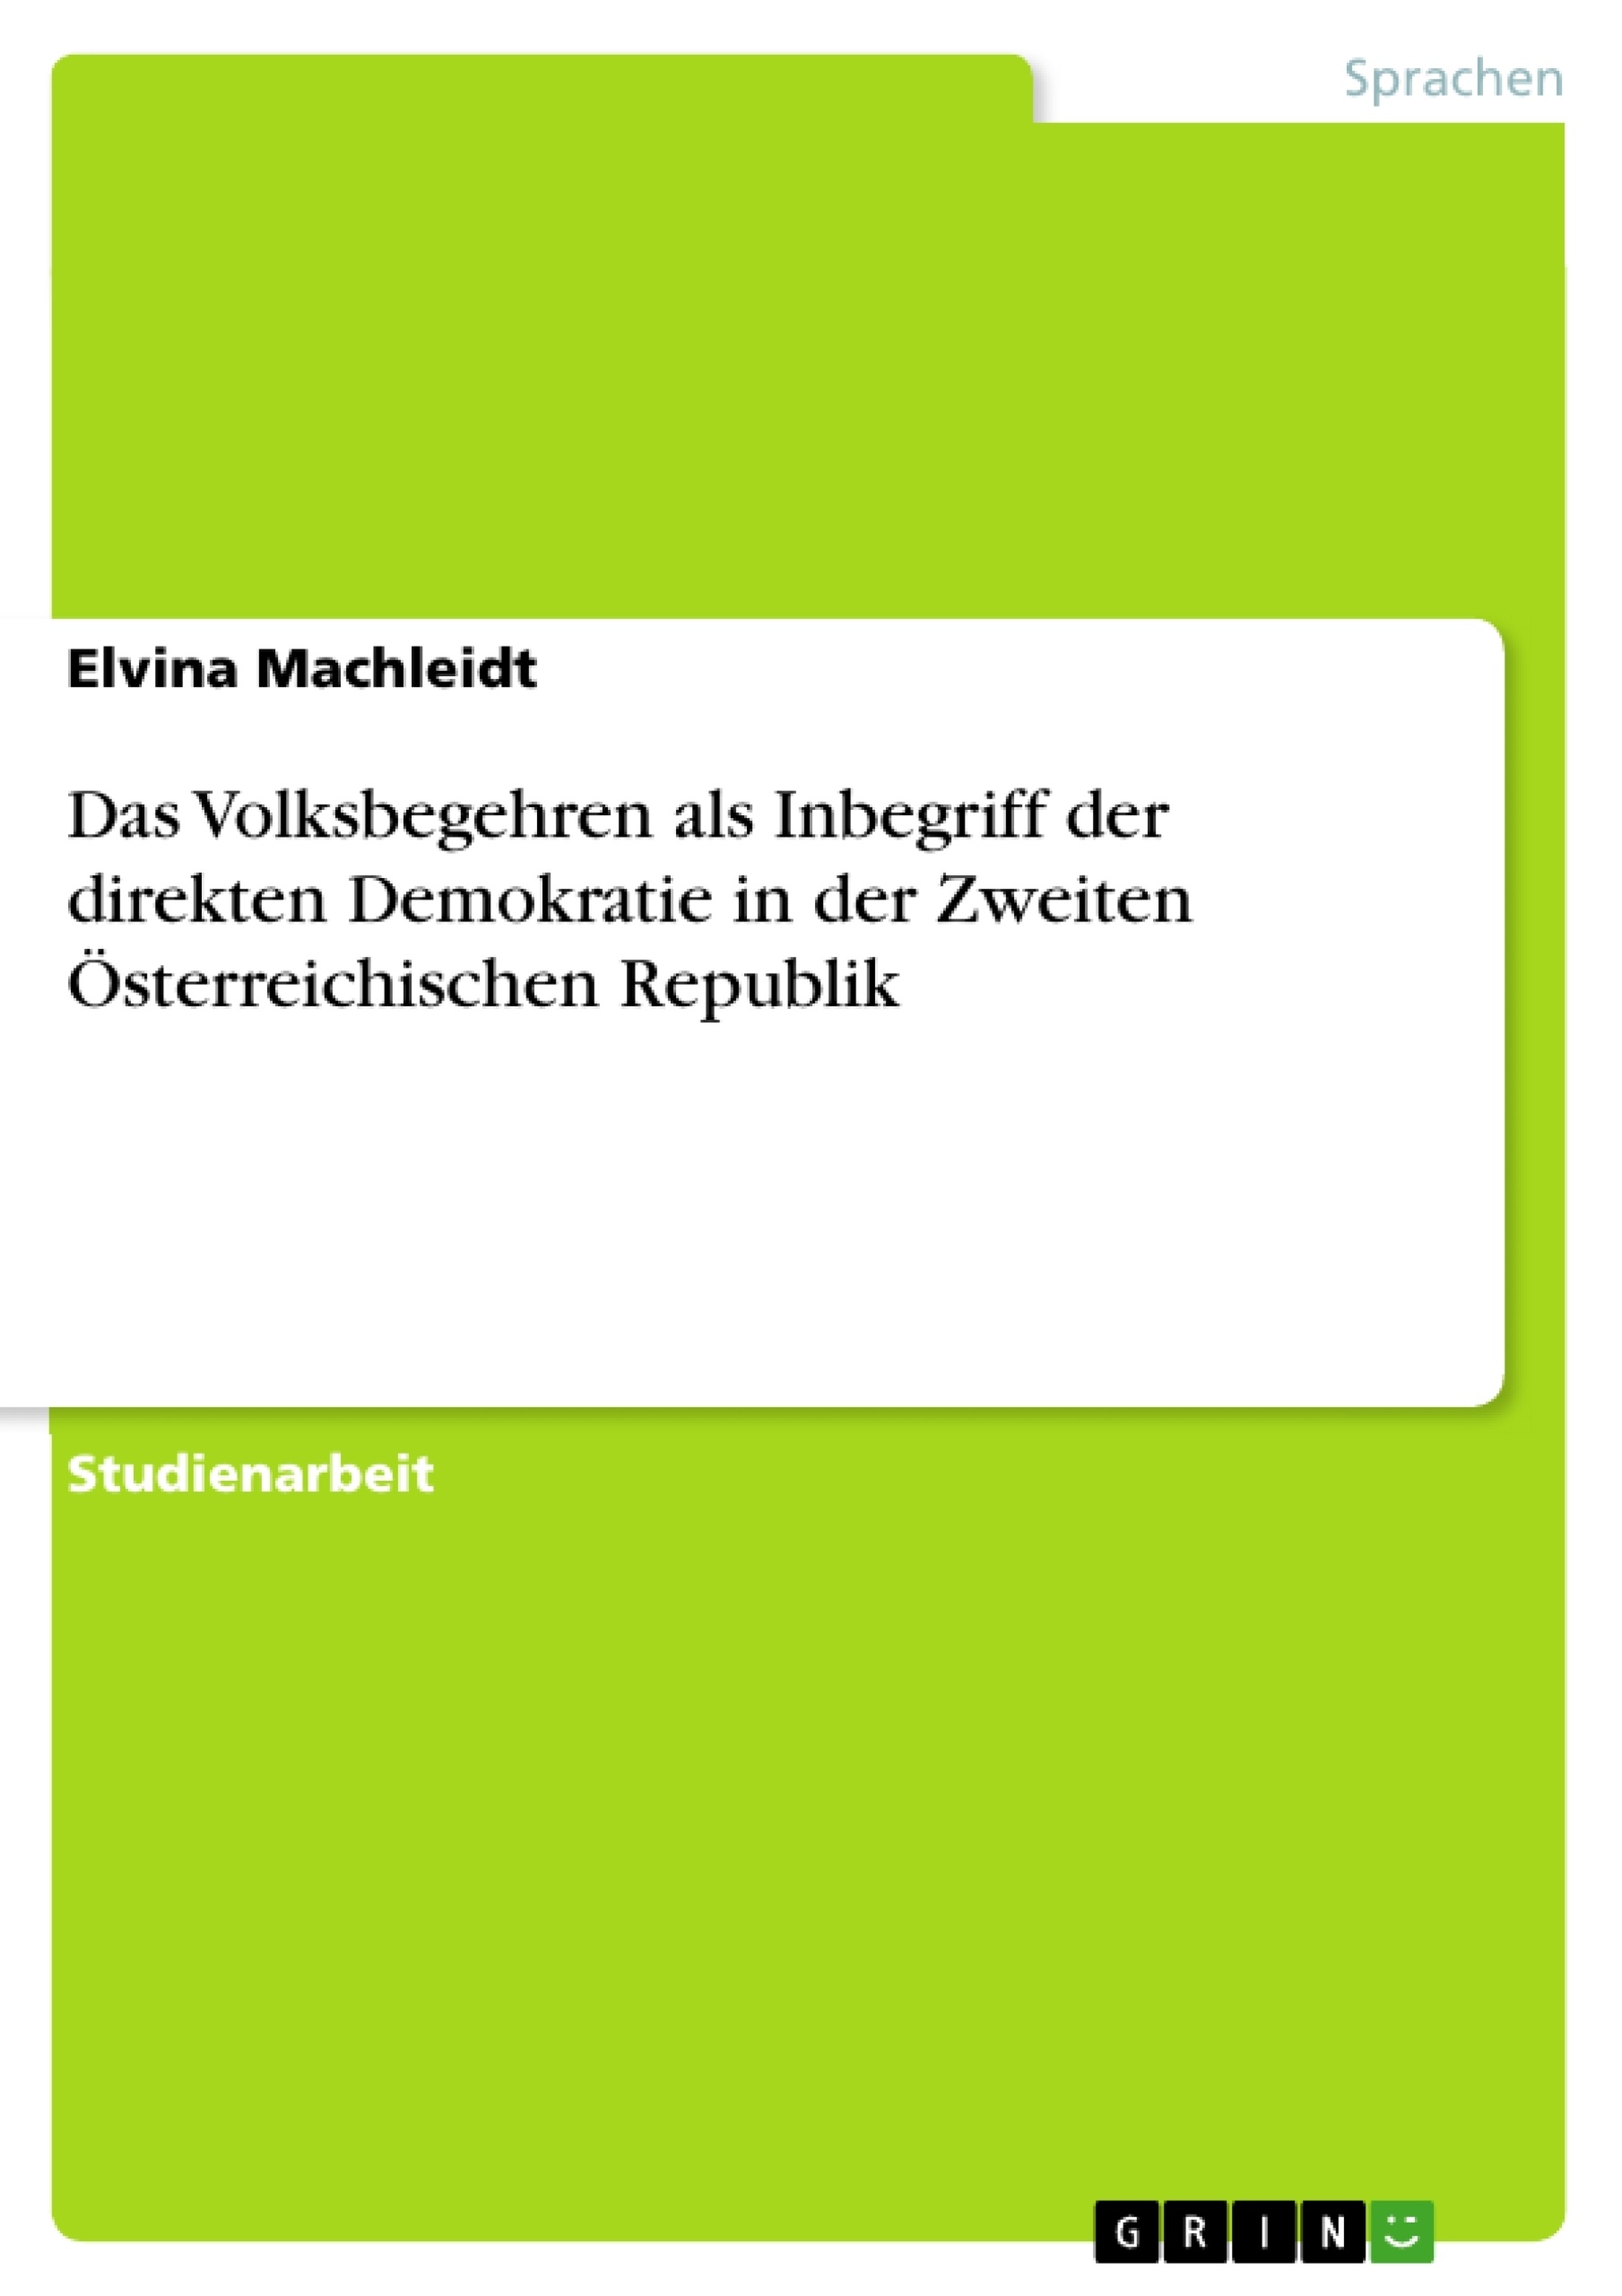 Título: Das Volksbegehren als Inbegriff der direkten Demokratie in der Zweiten Österreichischen Republik. Eine Analyse der historischen Entwicklung politischer Beteiligungsprozesse mit Fokus auf Minderheitensprachen